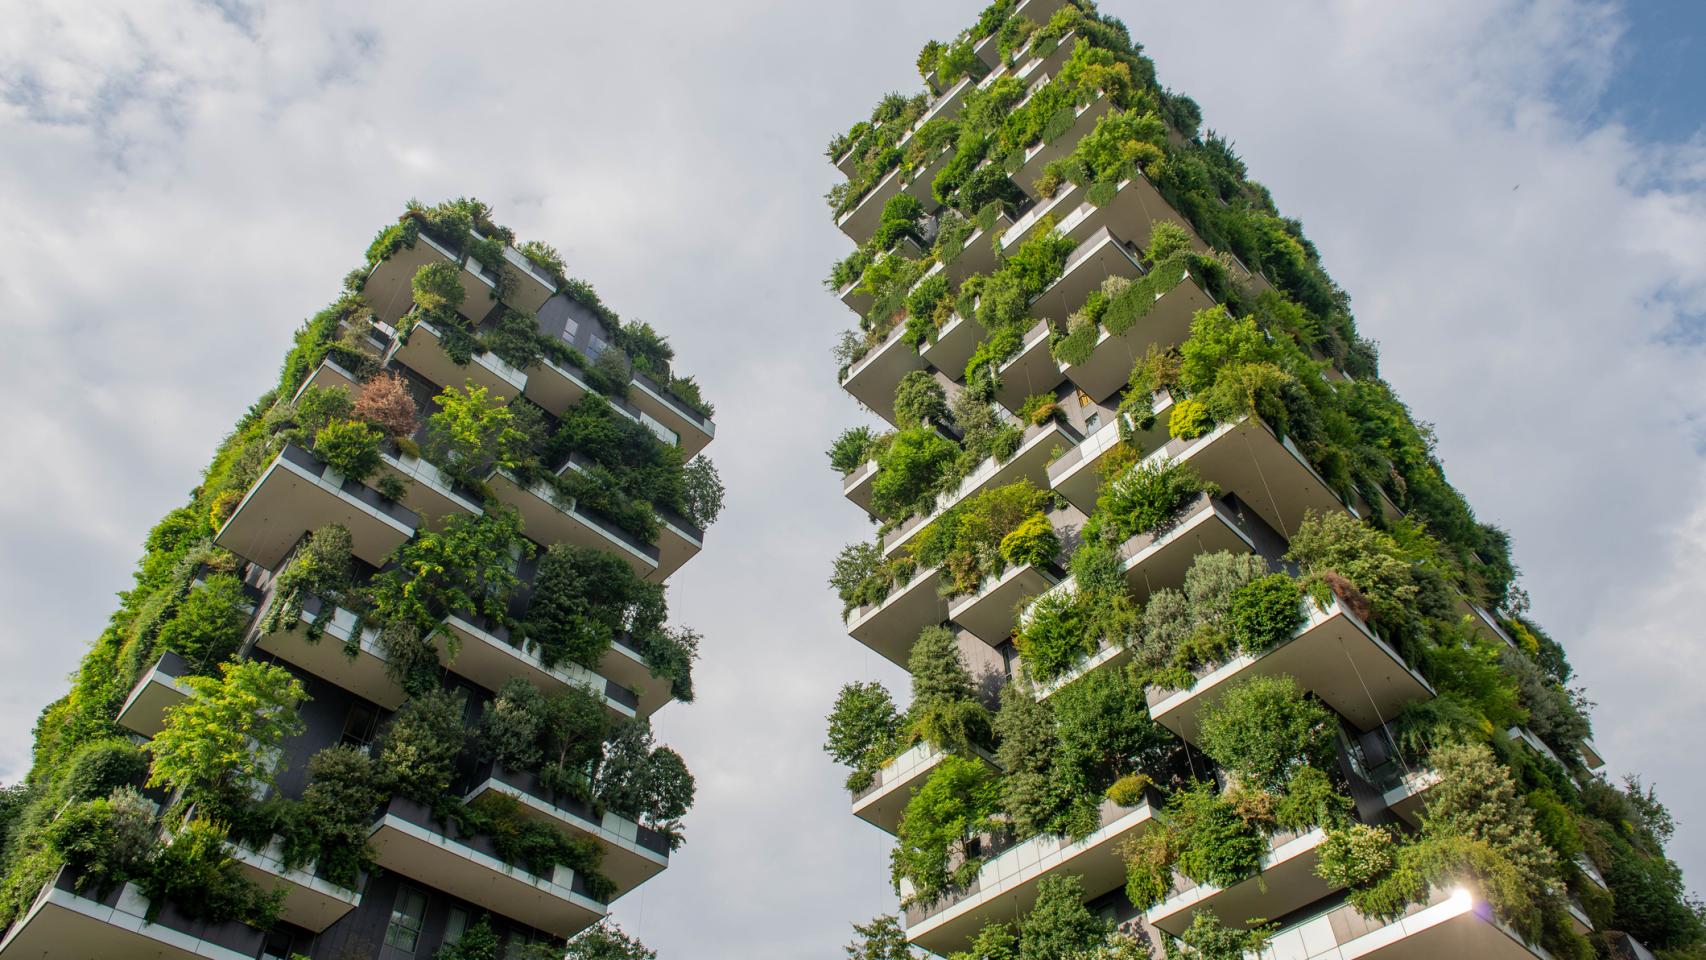 Cómo diseñar un jardín vertical natural, según dos paisajistas - Foto 1